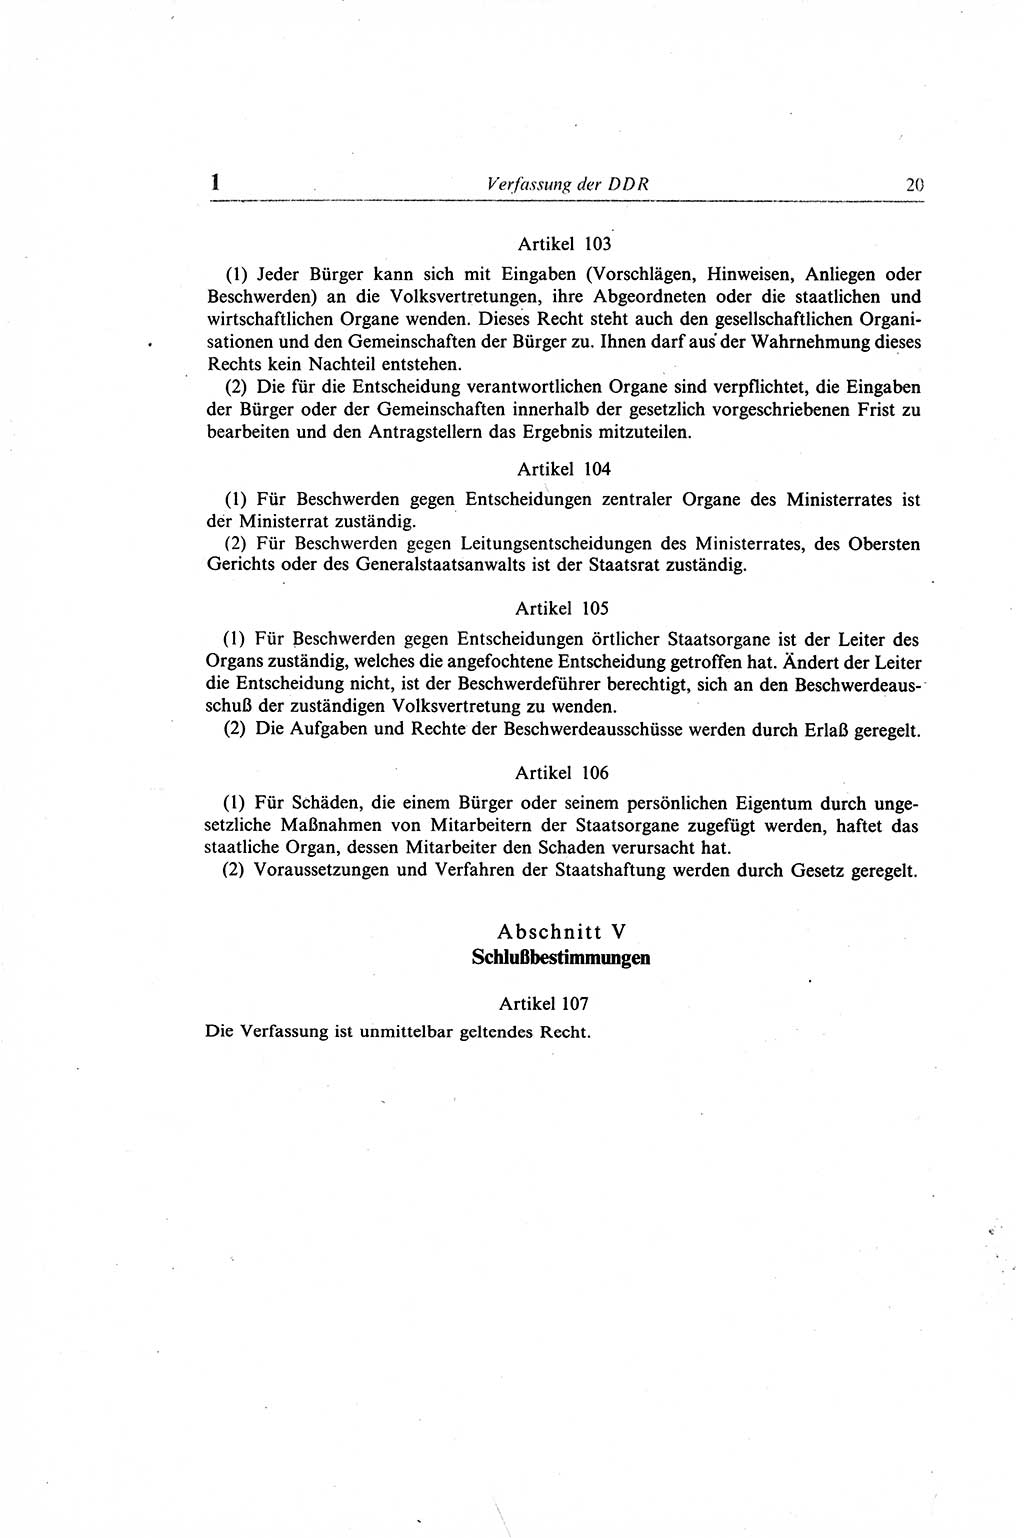 Gesetzbuch der Arbeit (GBA) und andere ausgewählte rechtliche Bestimmungen [Deutsche Demokratische Republik (DDR)] 1968, Seite 20 (GBA DDR 1968, S. 20)